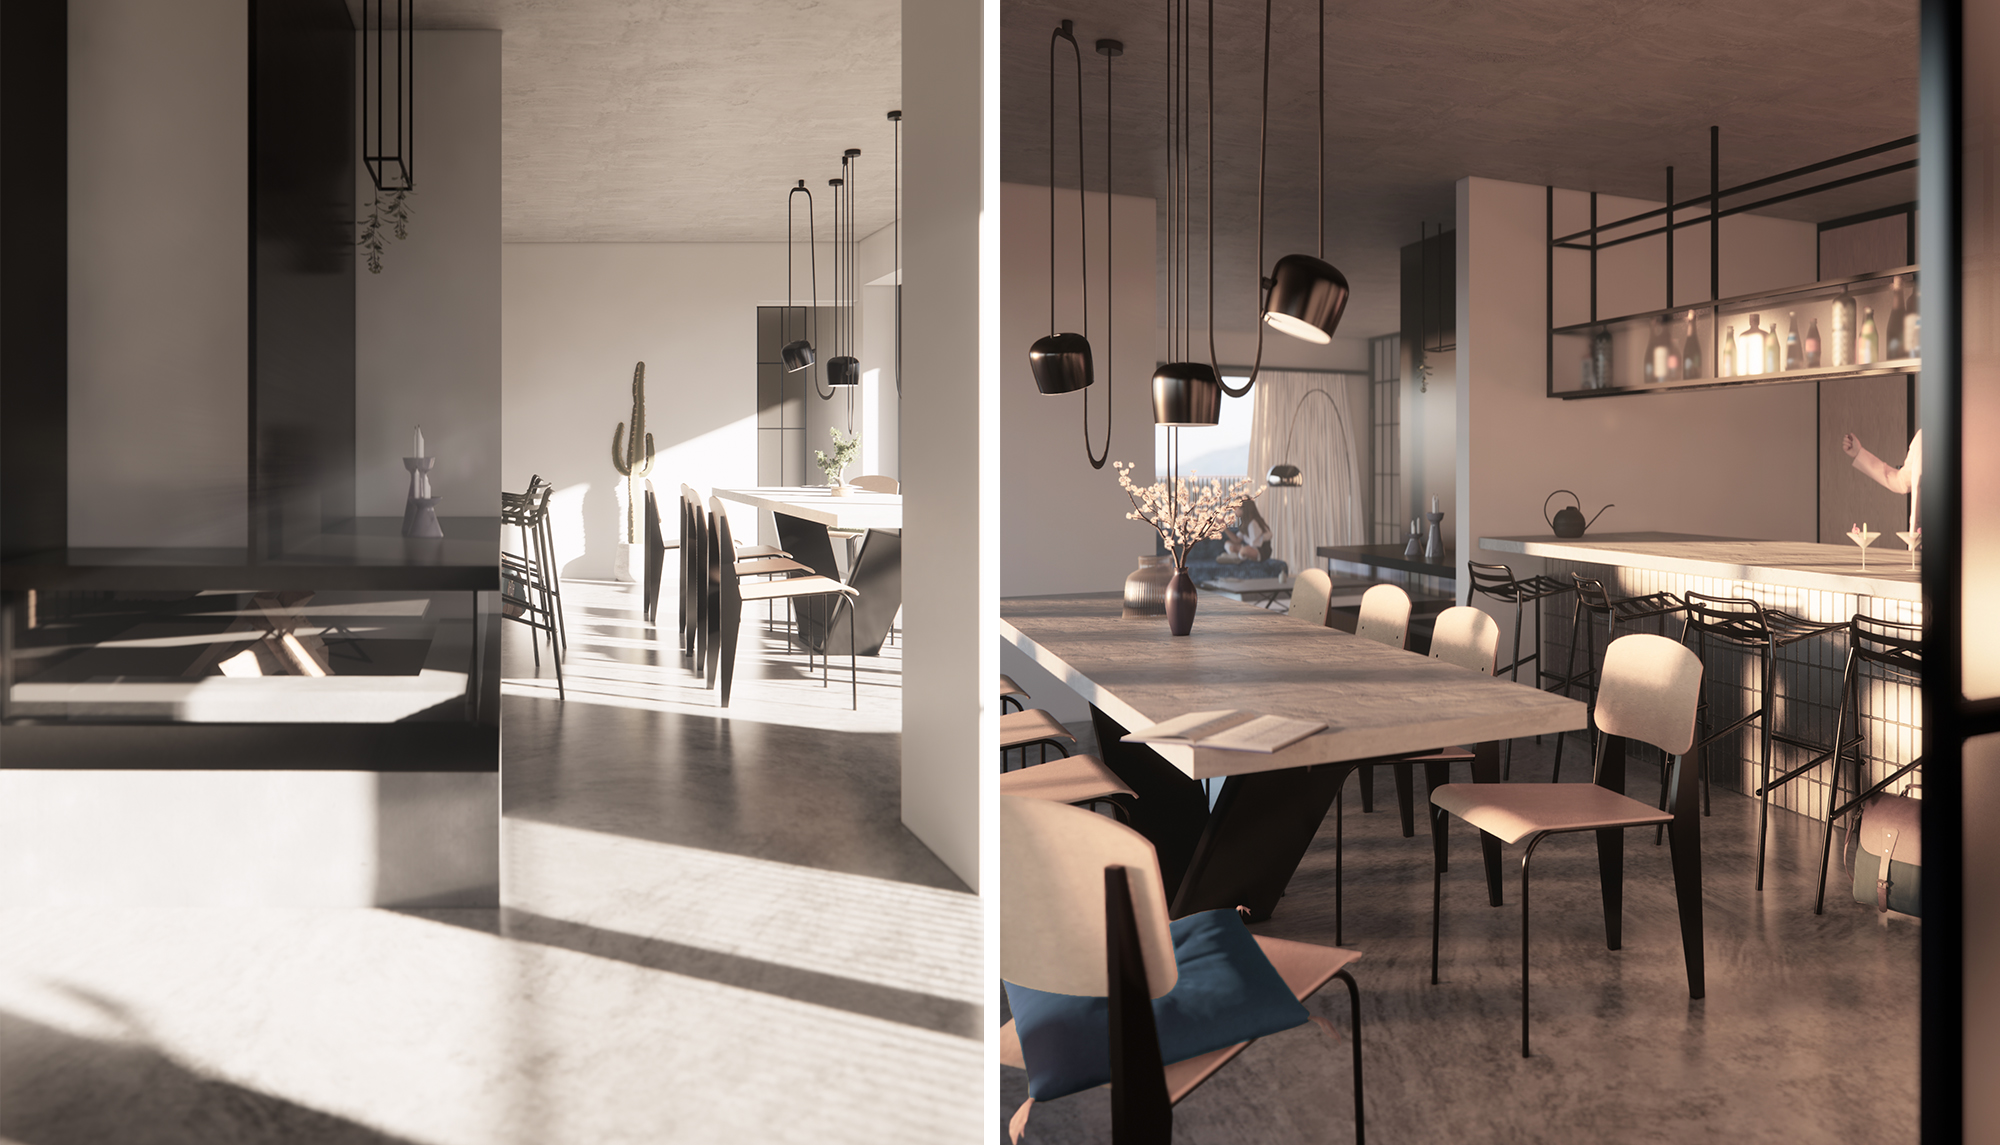 Apartment Design | offener Kochbereich | industriell und minimalistisch | SNOW ARCHITEKTUR